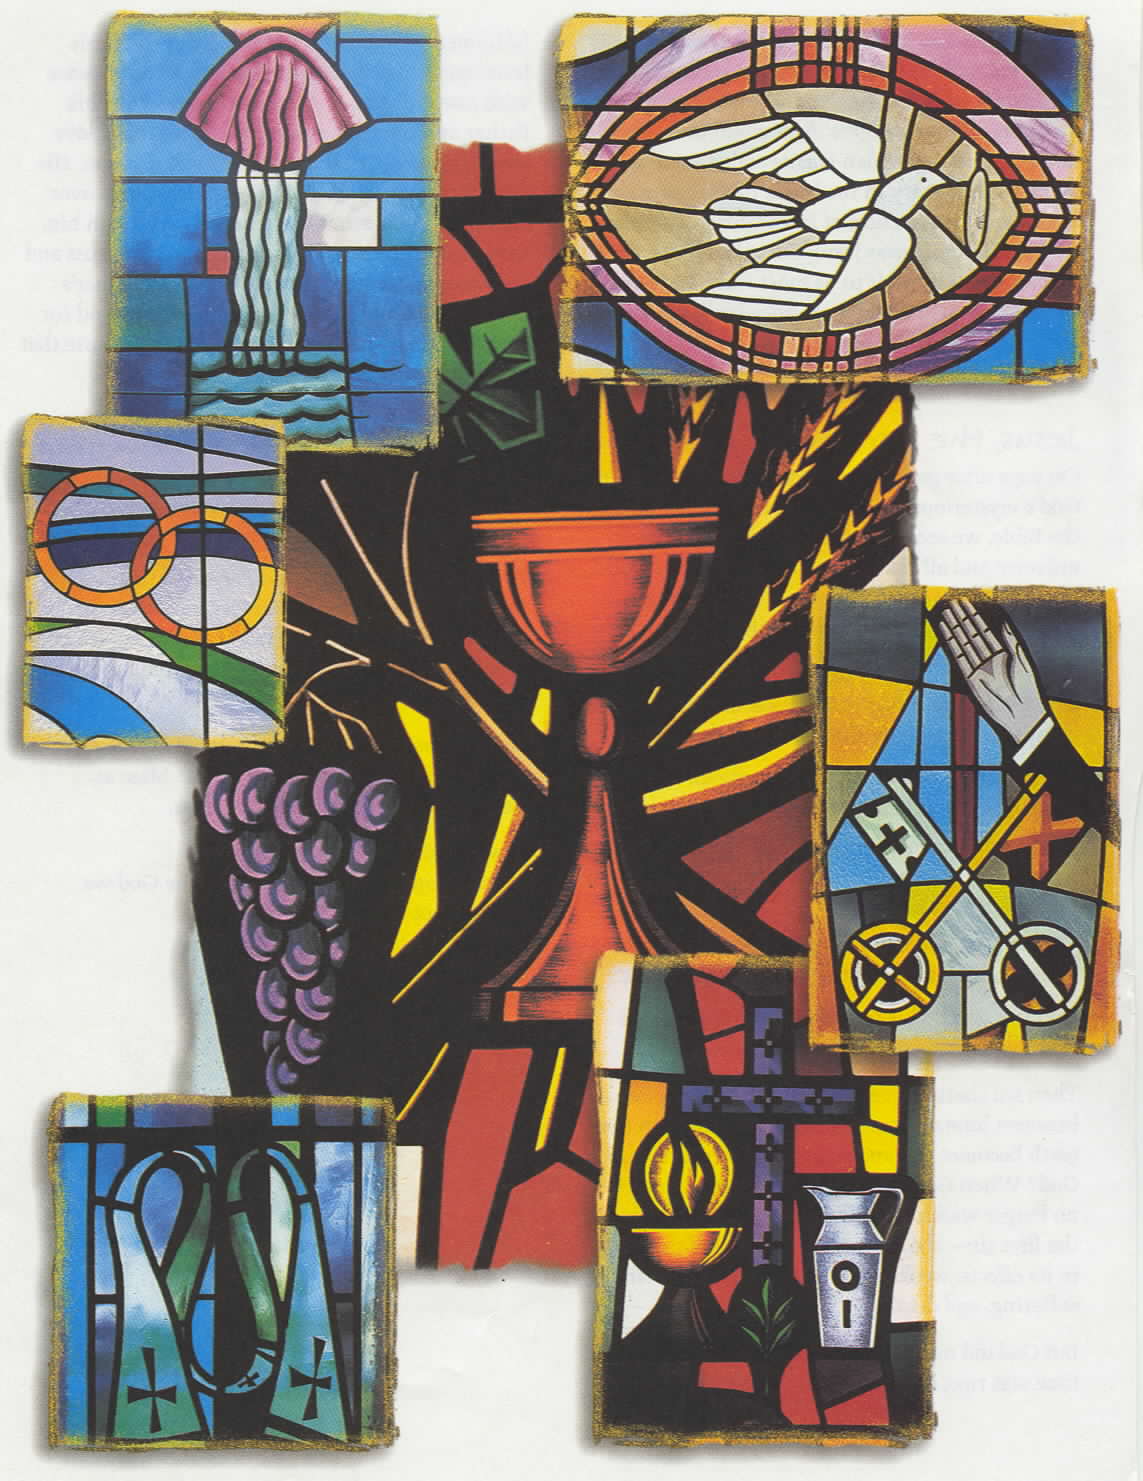 The Seven Catholic Sacraments Catholic Org Sacraments Of The Catholic